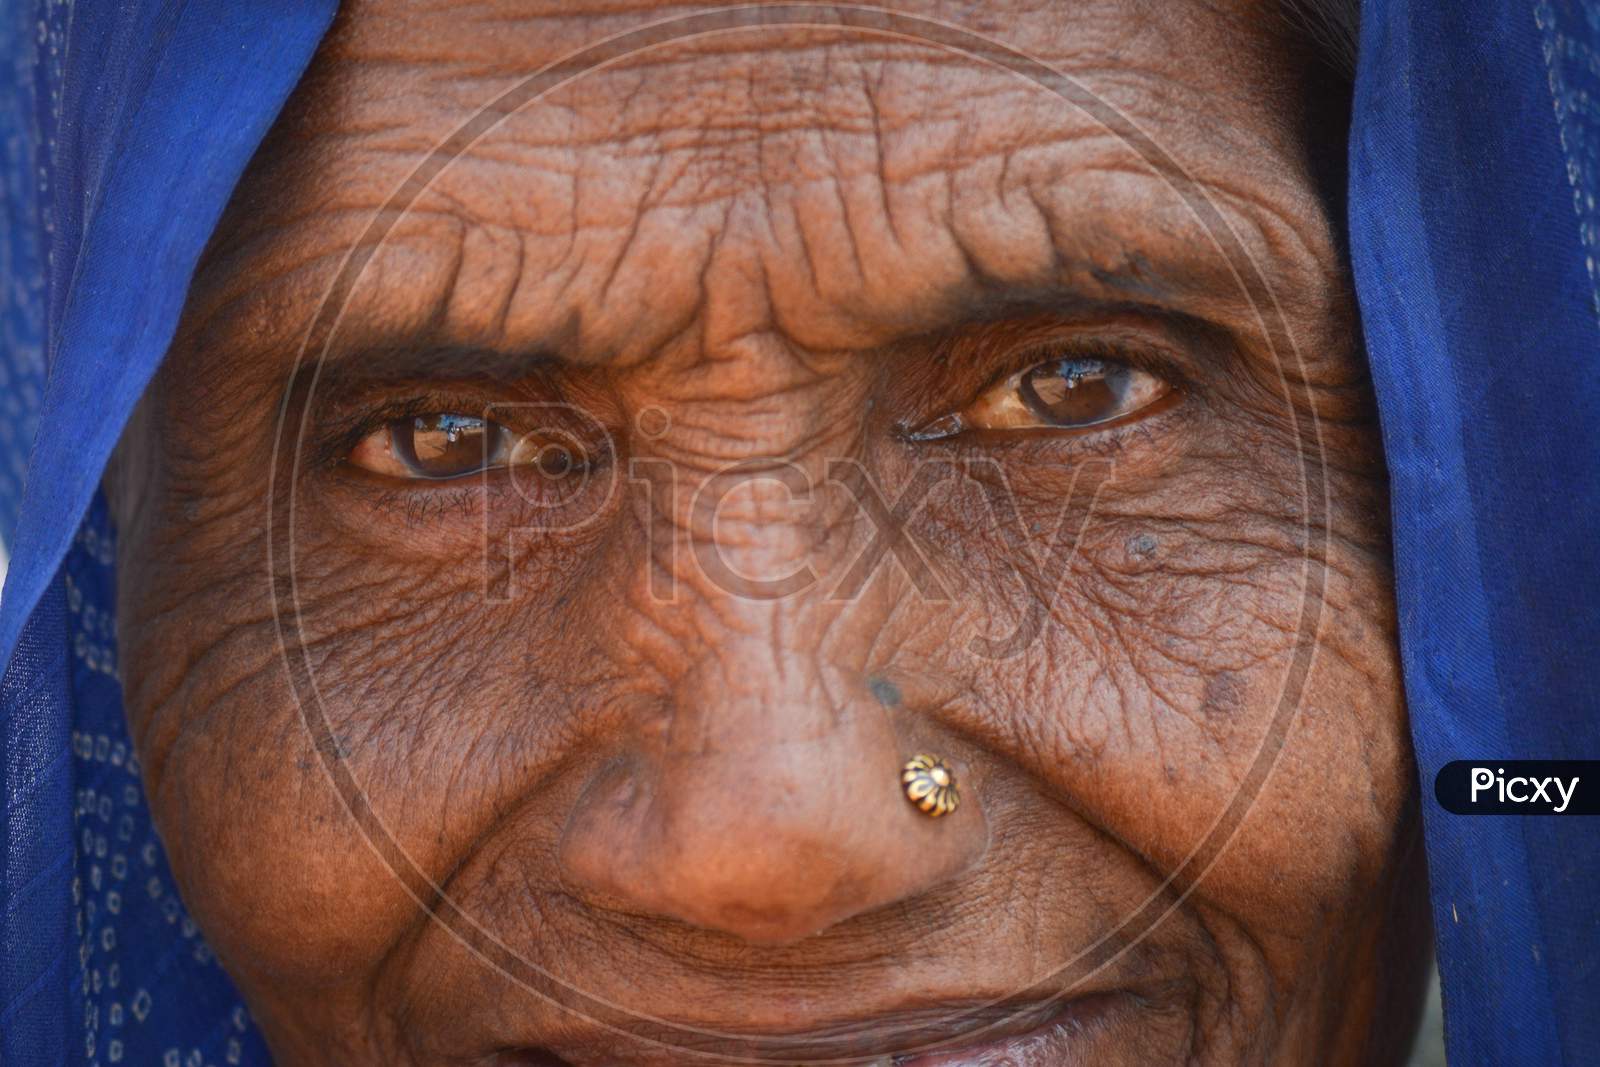 TIKAMGARH, MADHYA PRADESH, INDIA - FEBRUARY 08, 2020: Closeup shot of the eyes of an old indian woman staring at the camera.